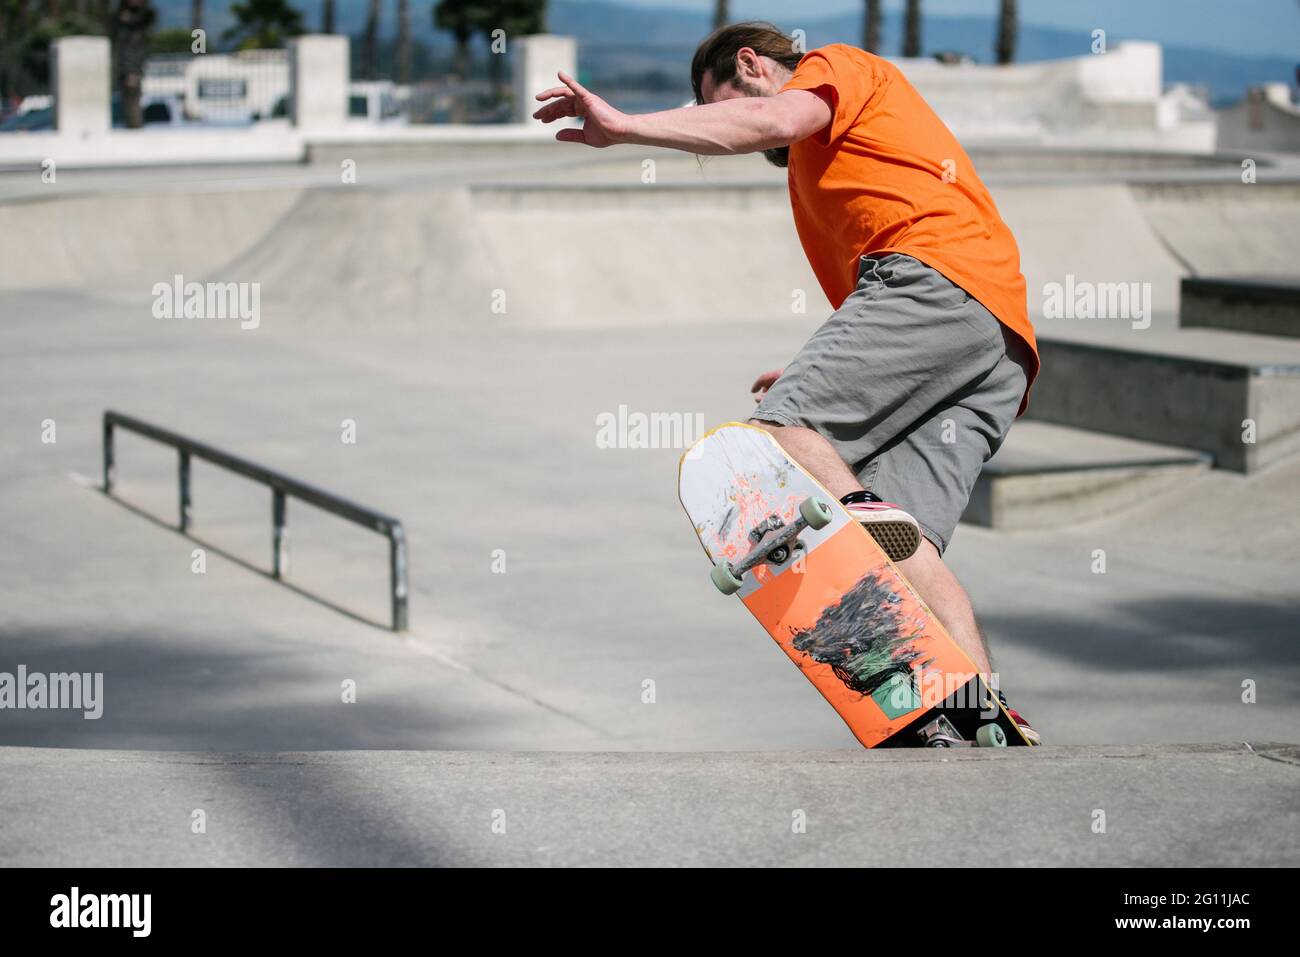 USA, California, Ventura, Man skateboarding in skate park Stock Photo